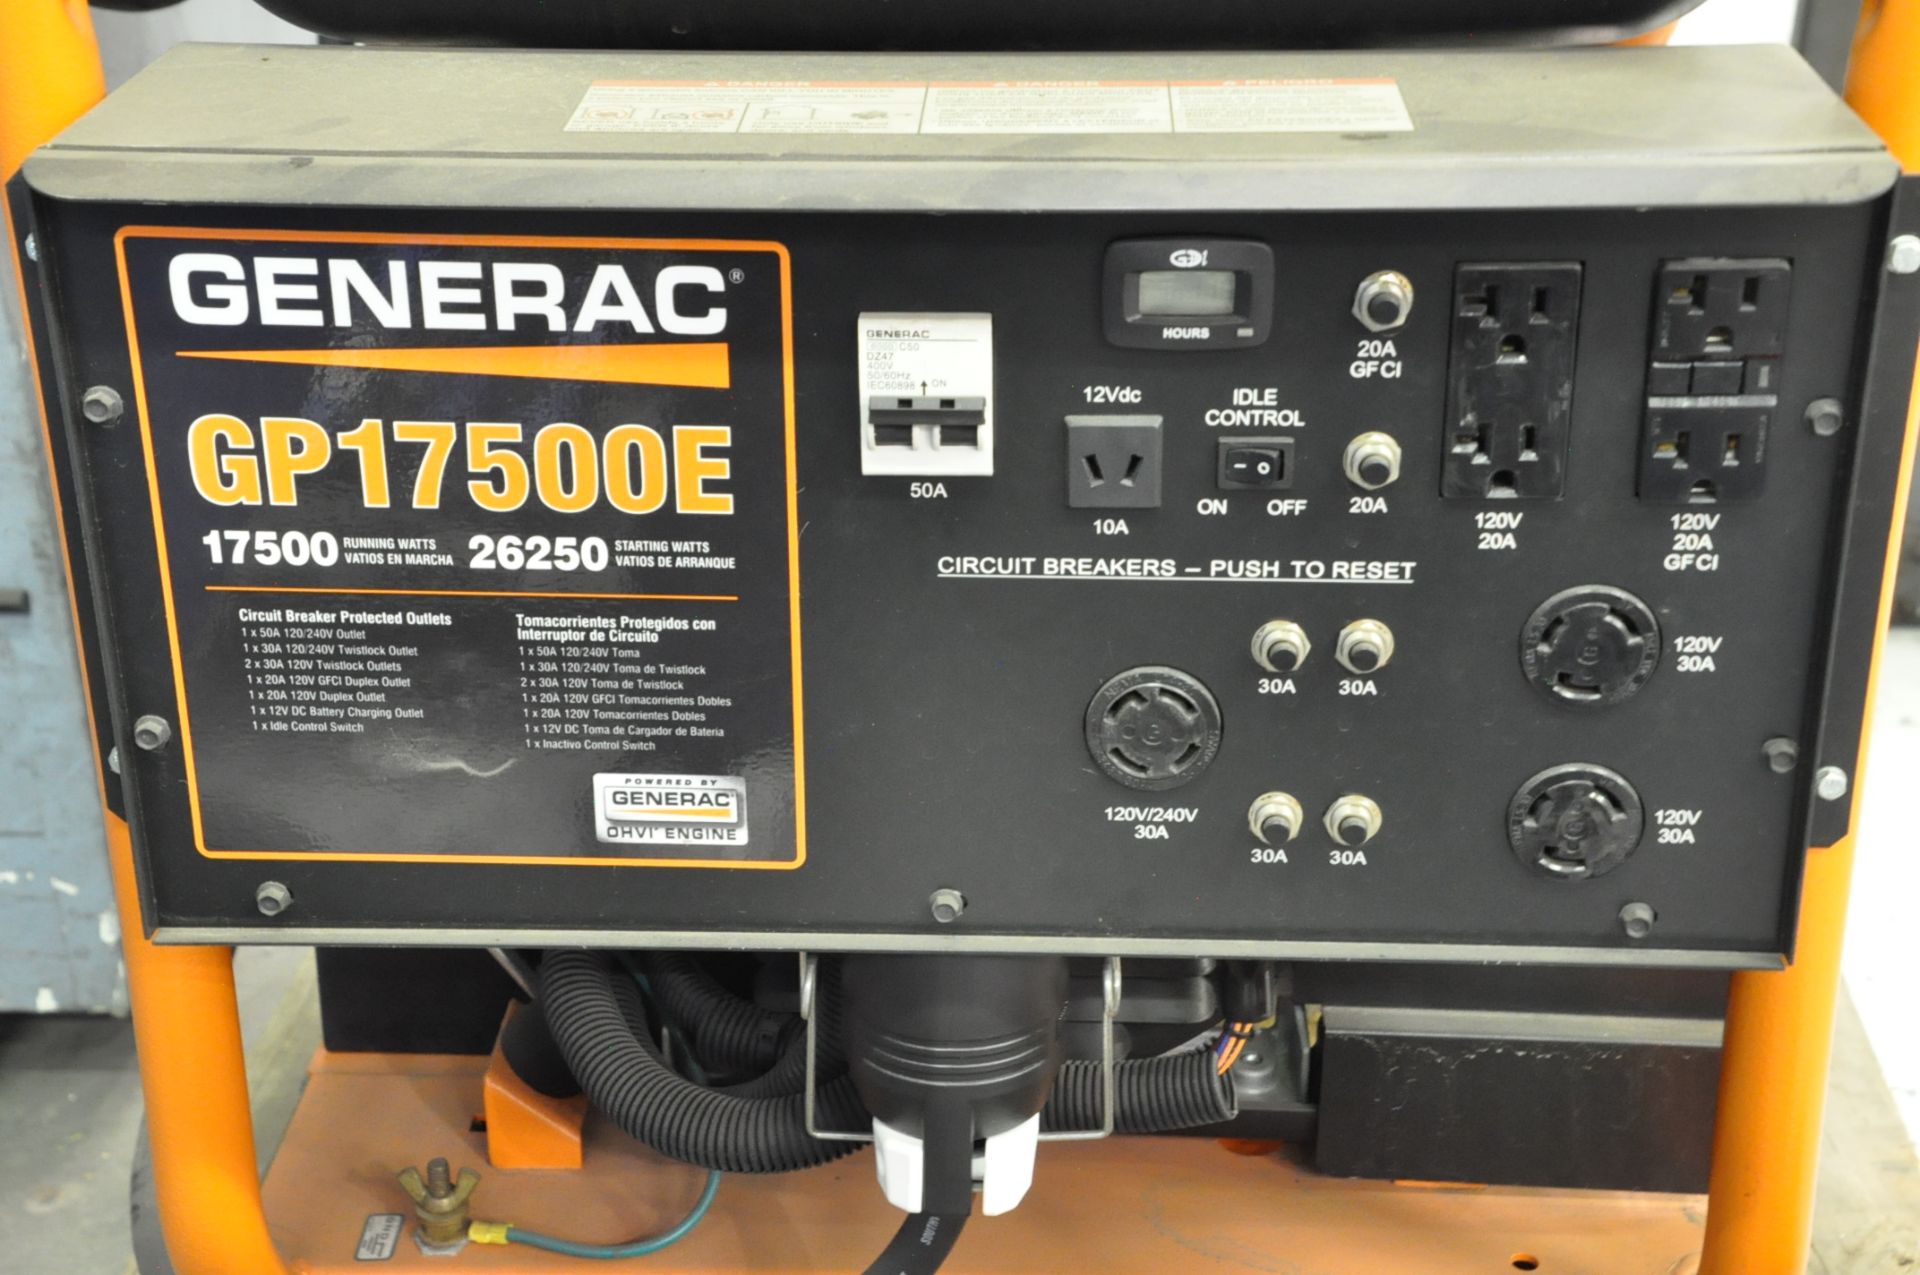 Generac Model GP17500E, 26,250 Starting Watts, 17,500 Running Watts, Portable Gas Powered Generator - Image 2 of 2